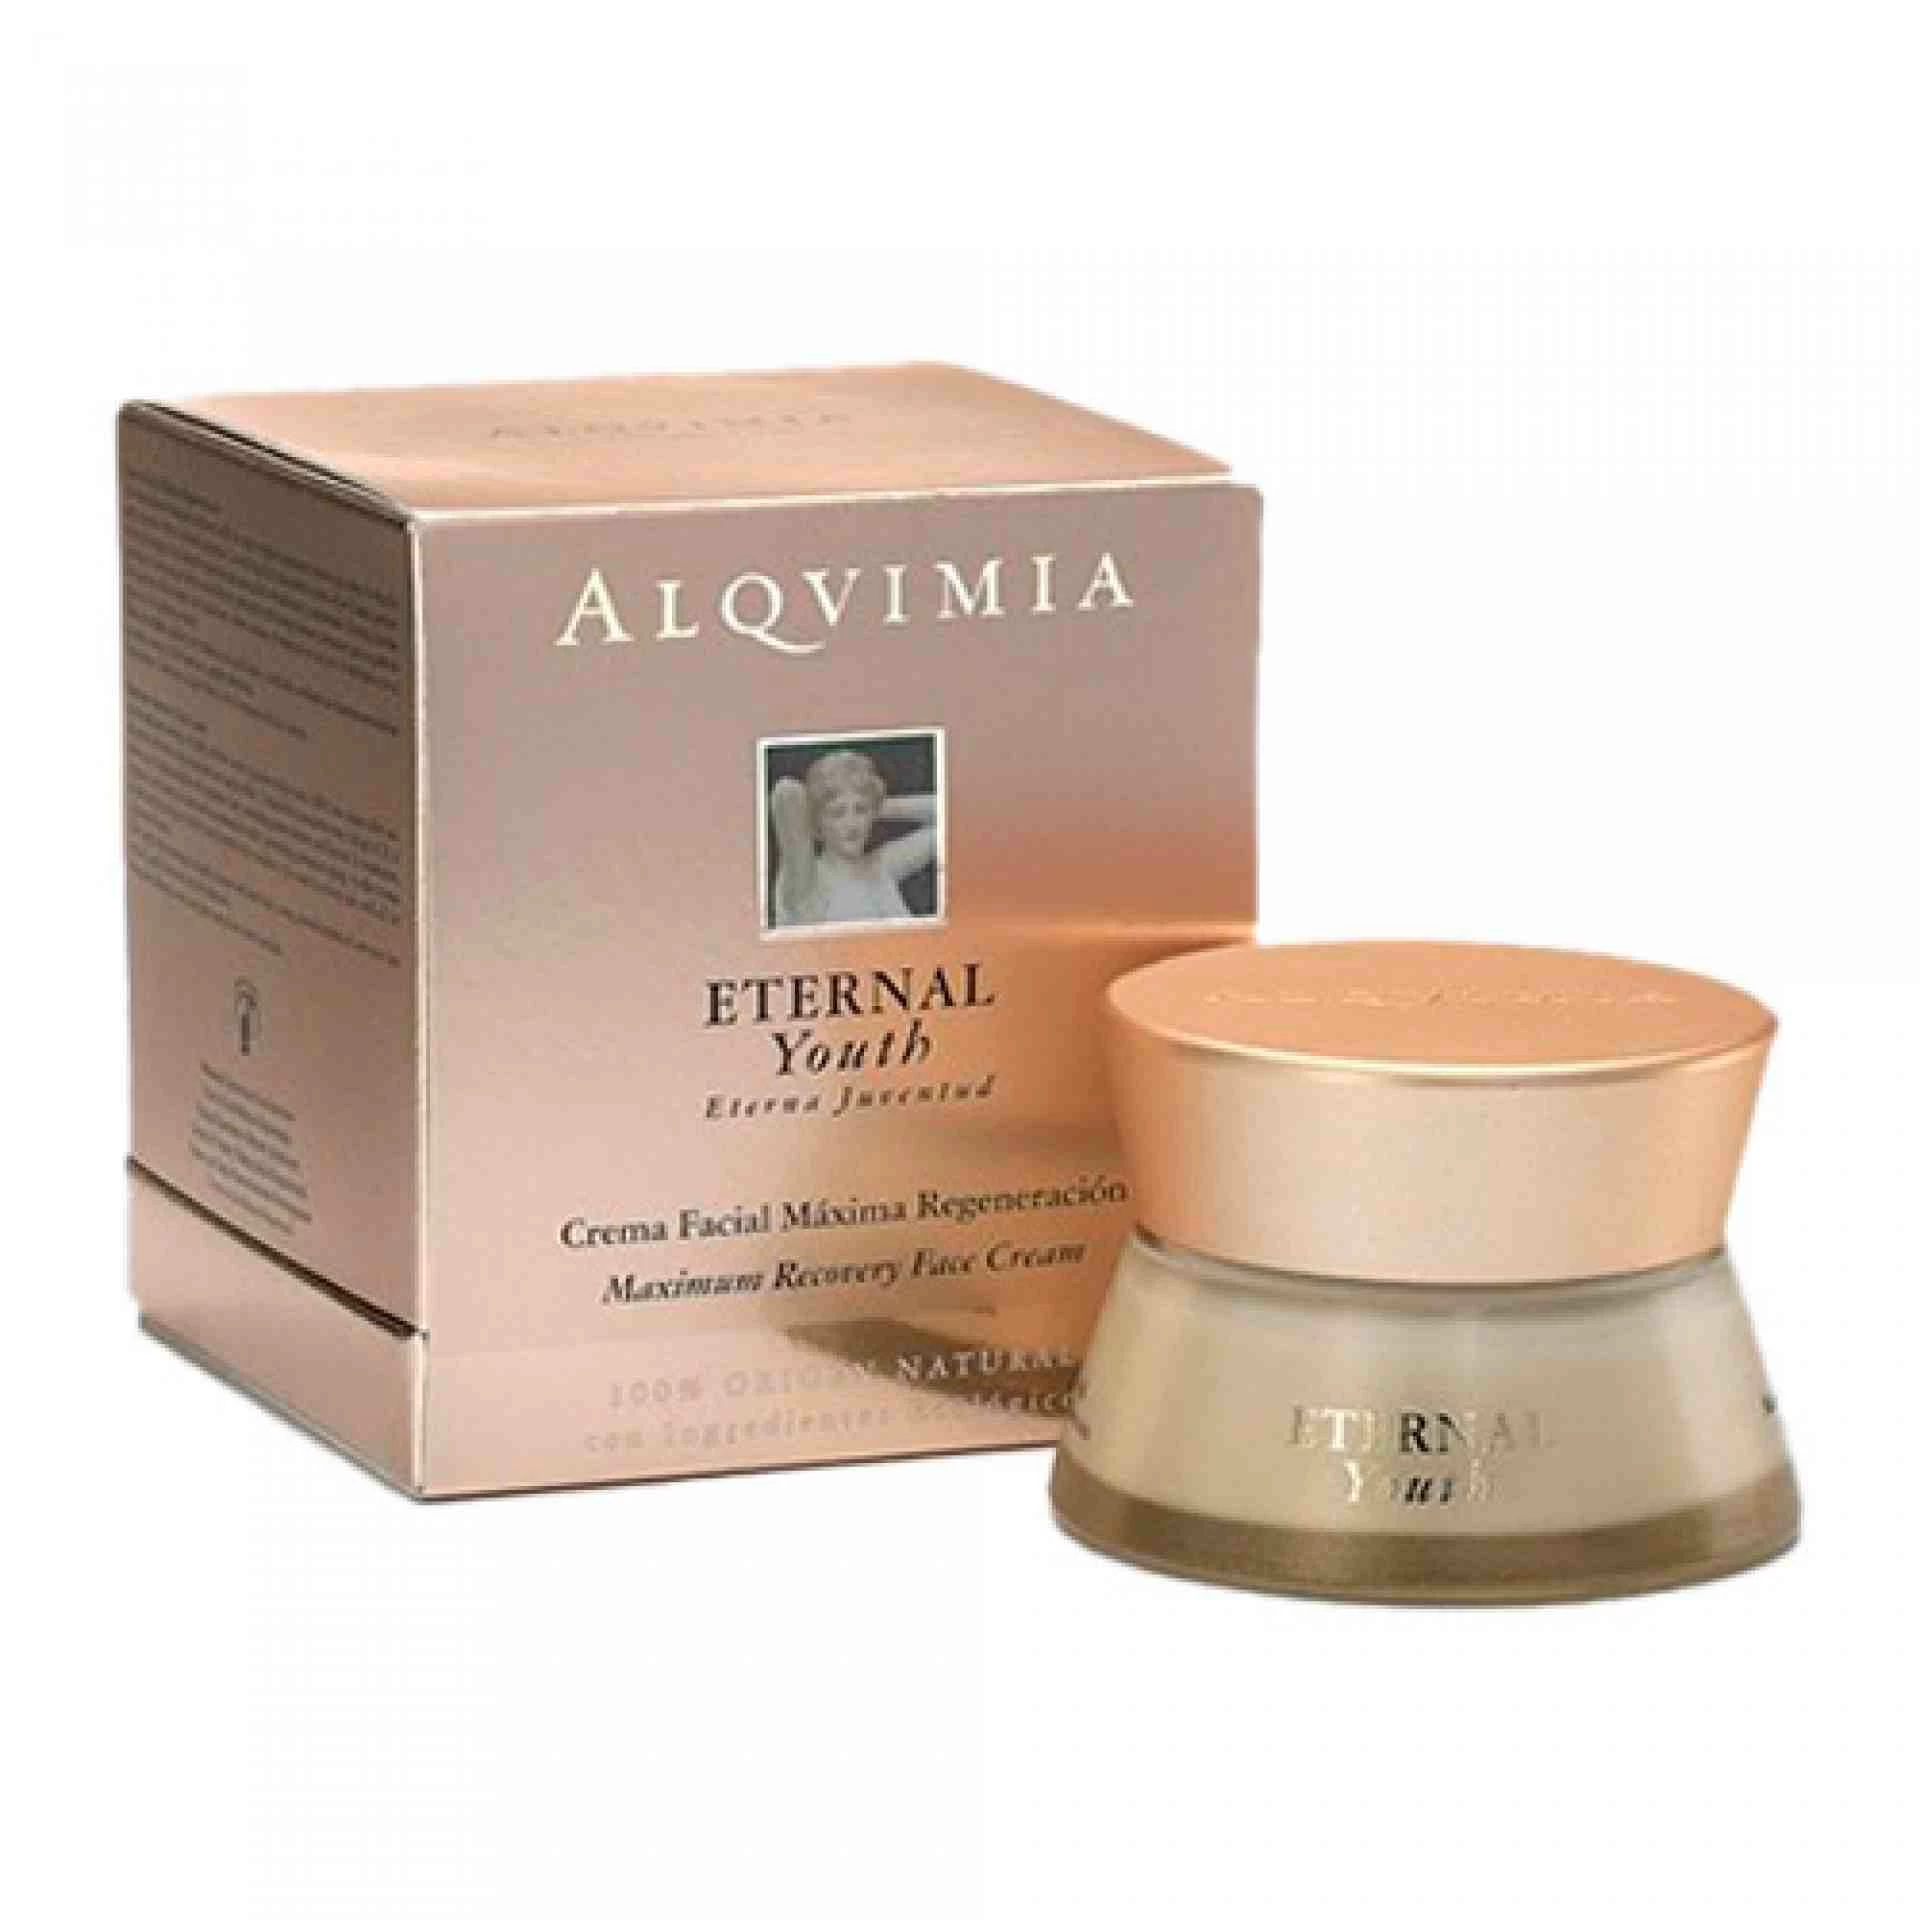 Kit: Crema 50ml, Agua 30ml y Aceite 30ml | Cofre tratamiento facial - Eternal Youth - Alqvimia ®